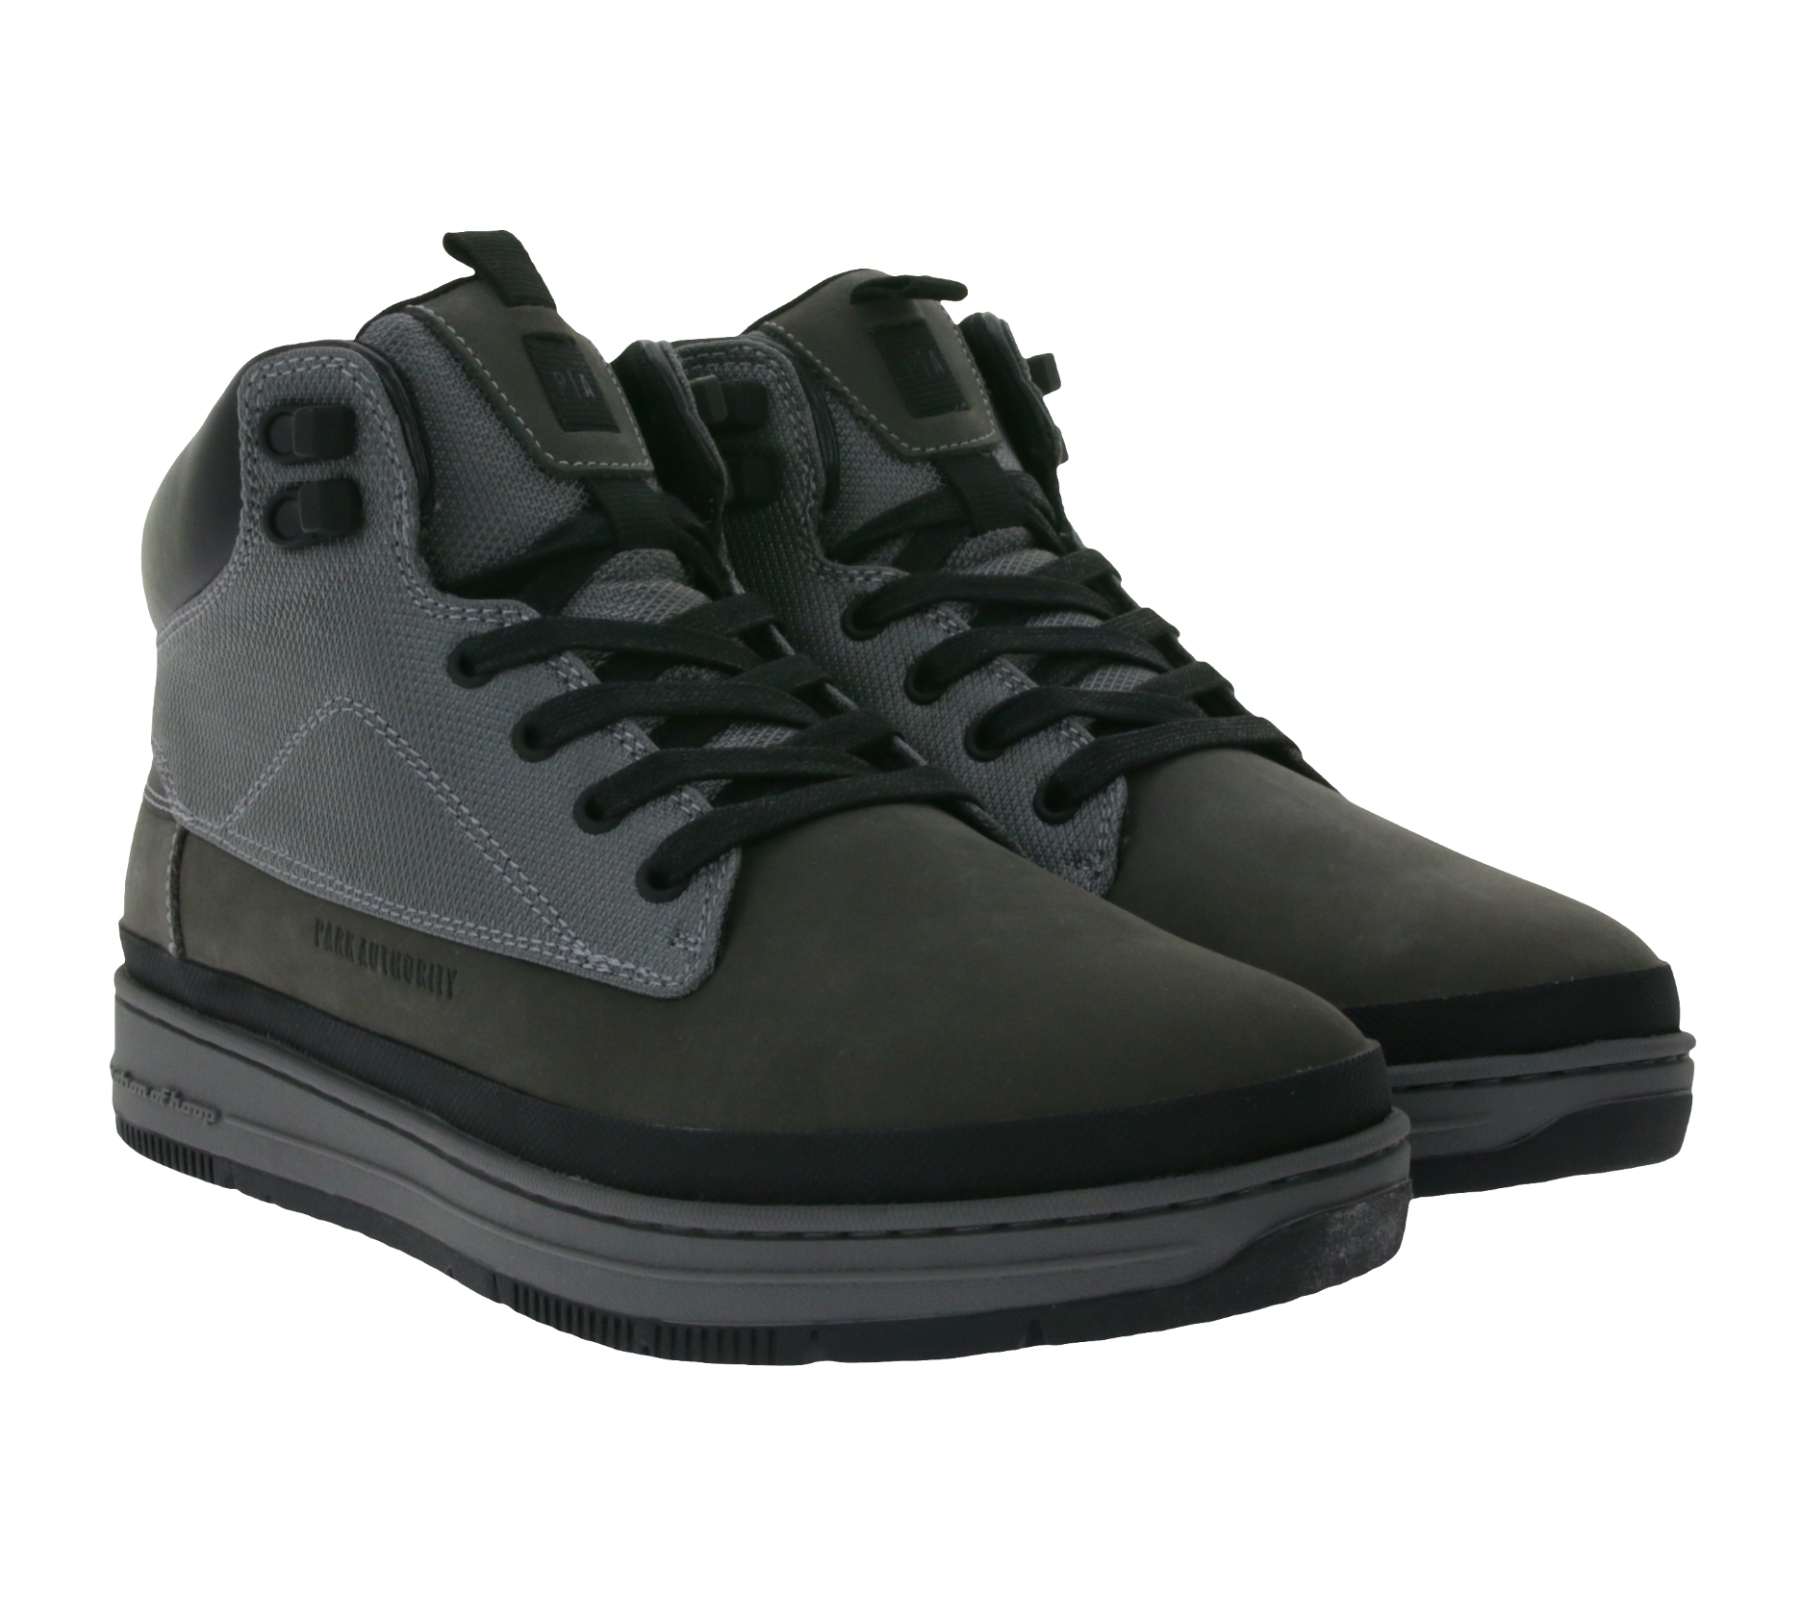 PARK AUTHORITY by K1X | Kickz GK5000 Herren Sneaker-Boots aus Veloursleder mit Textil-Overlays Stiefel 6214-0508/8974 Grau/Schwarz von K1X | KICKZ